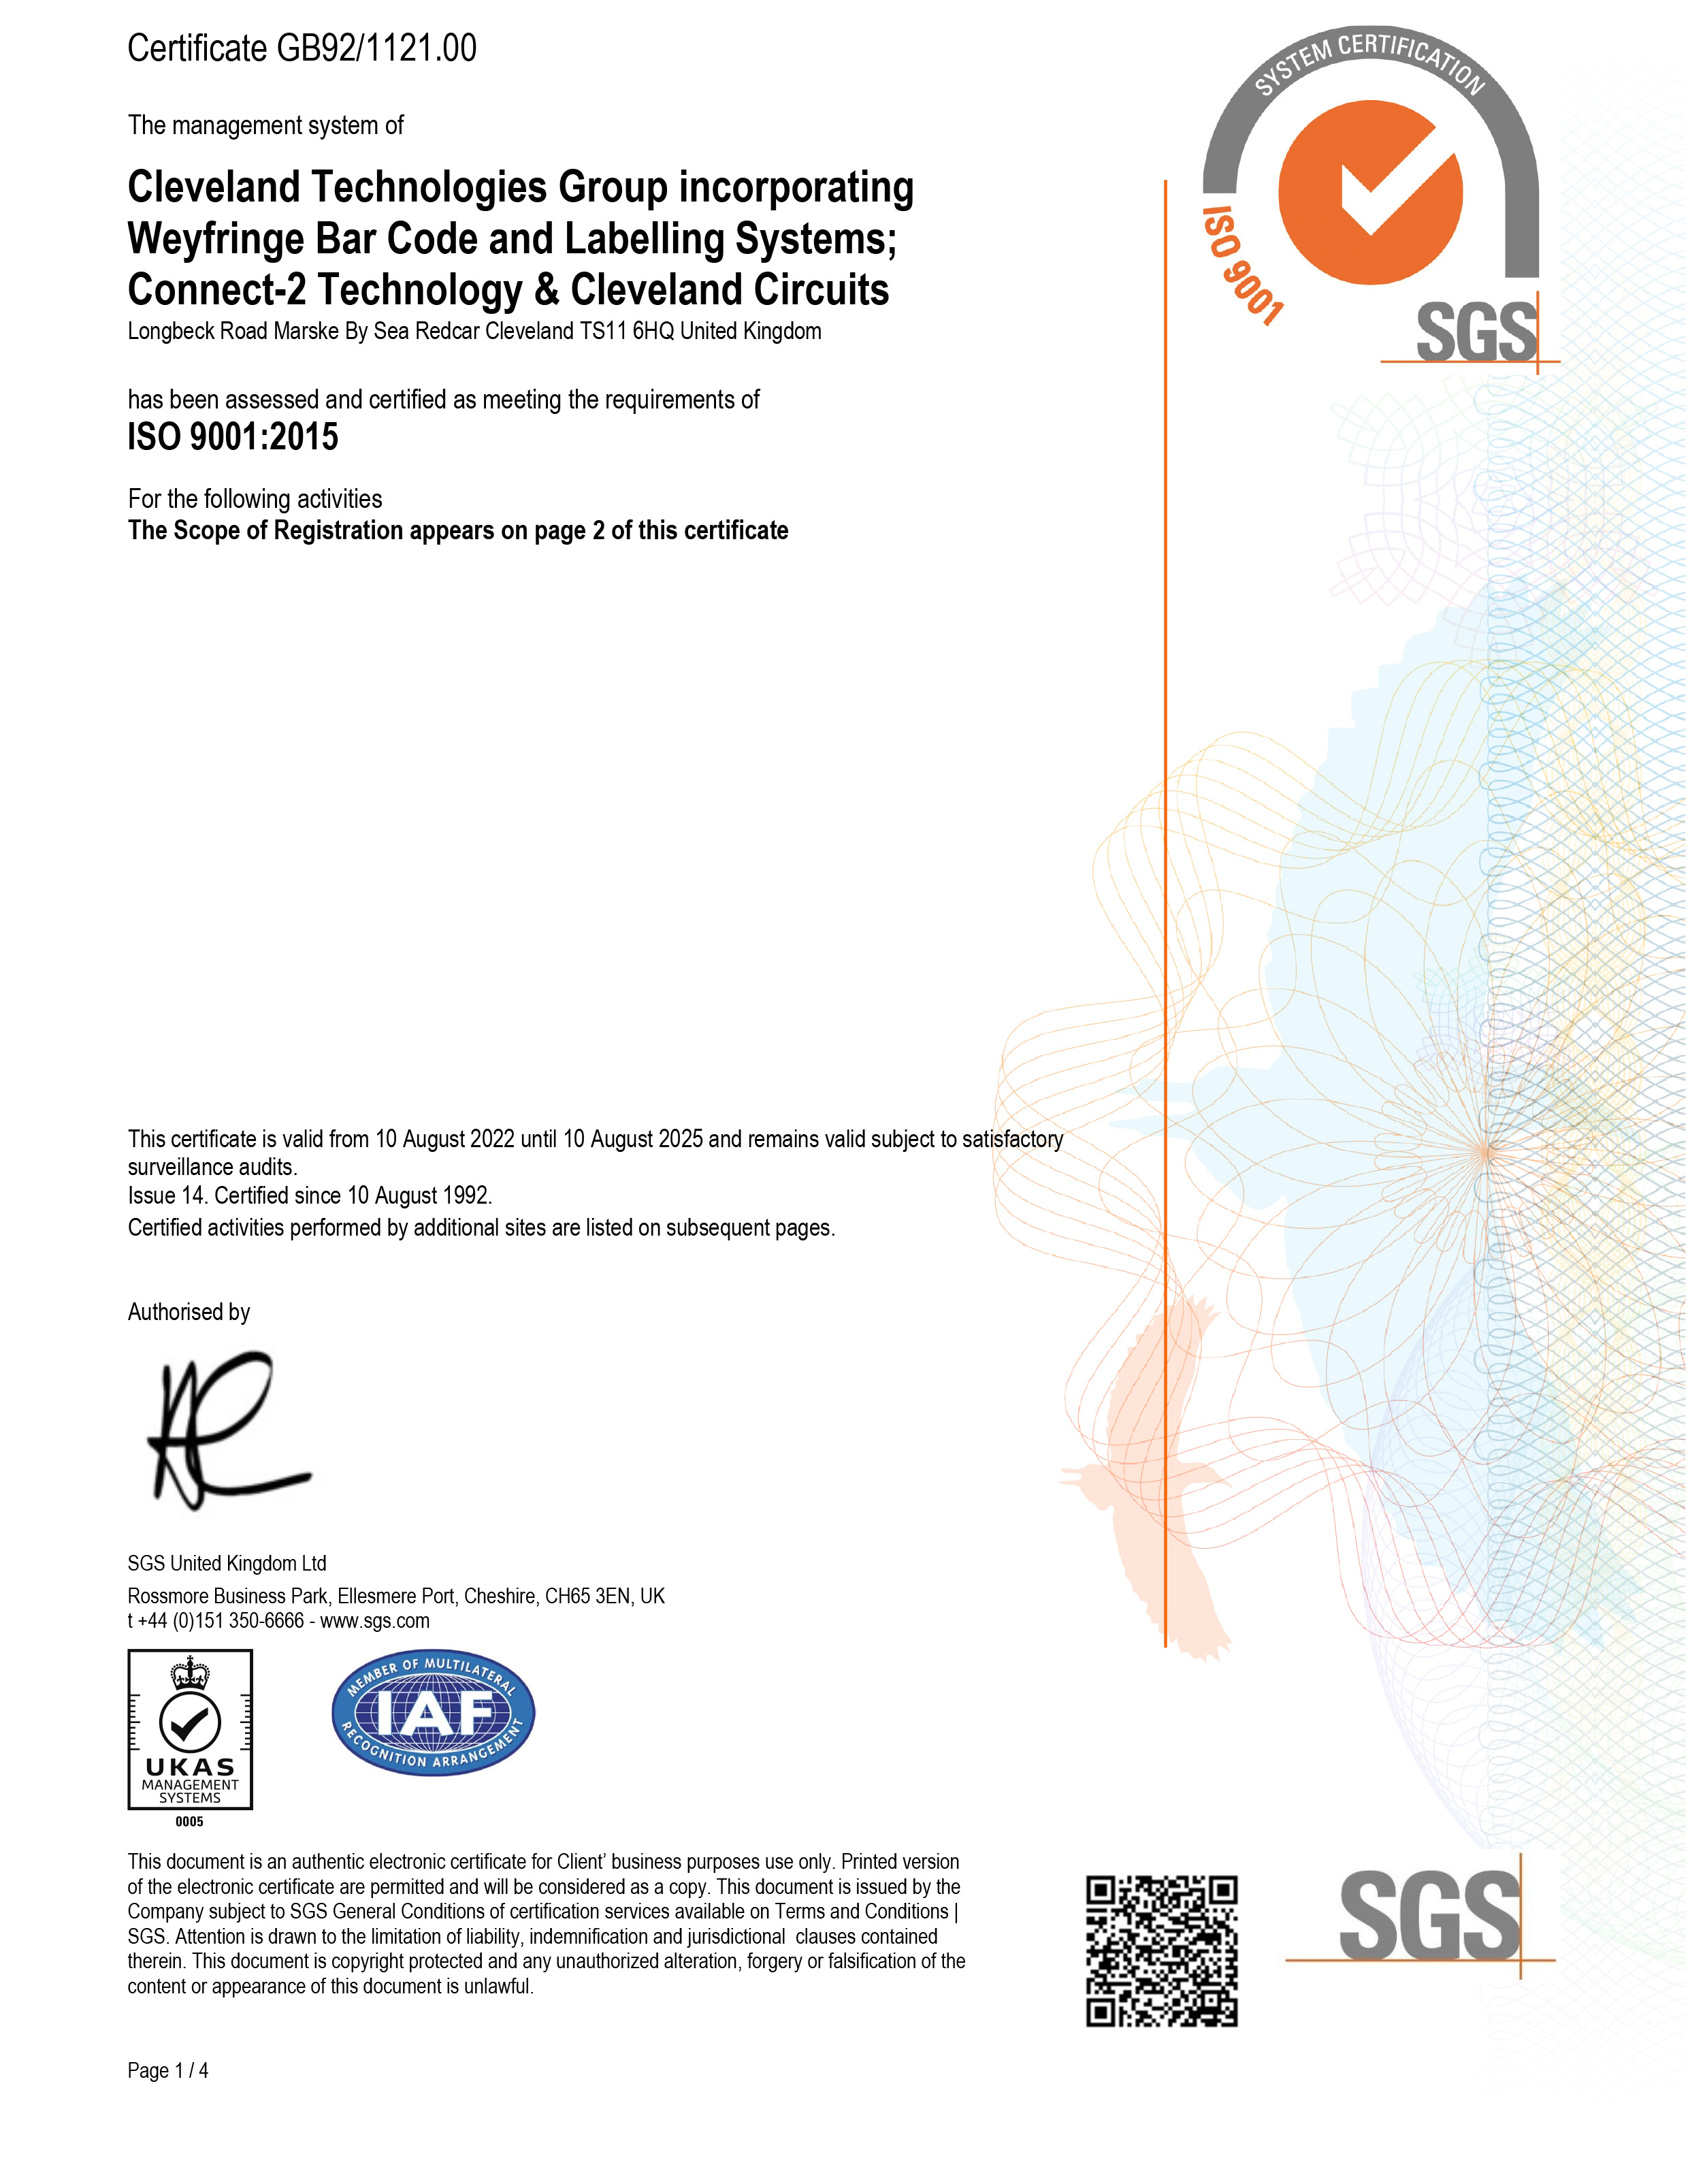 CTG Ltd ISO9001:2015 cert 1